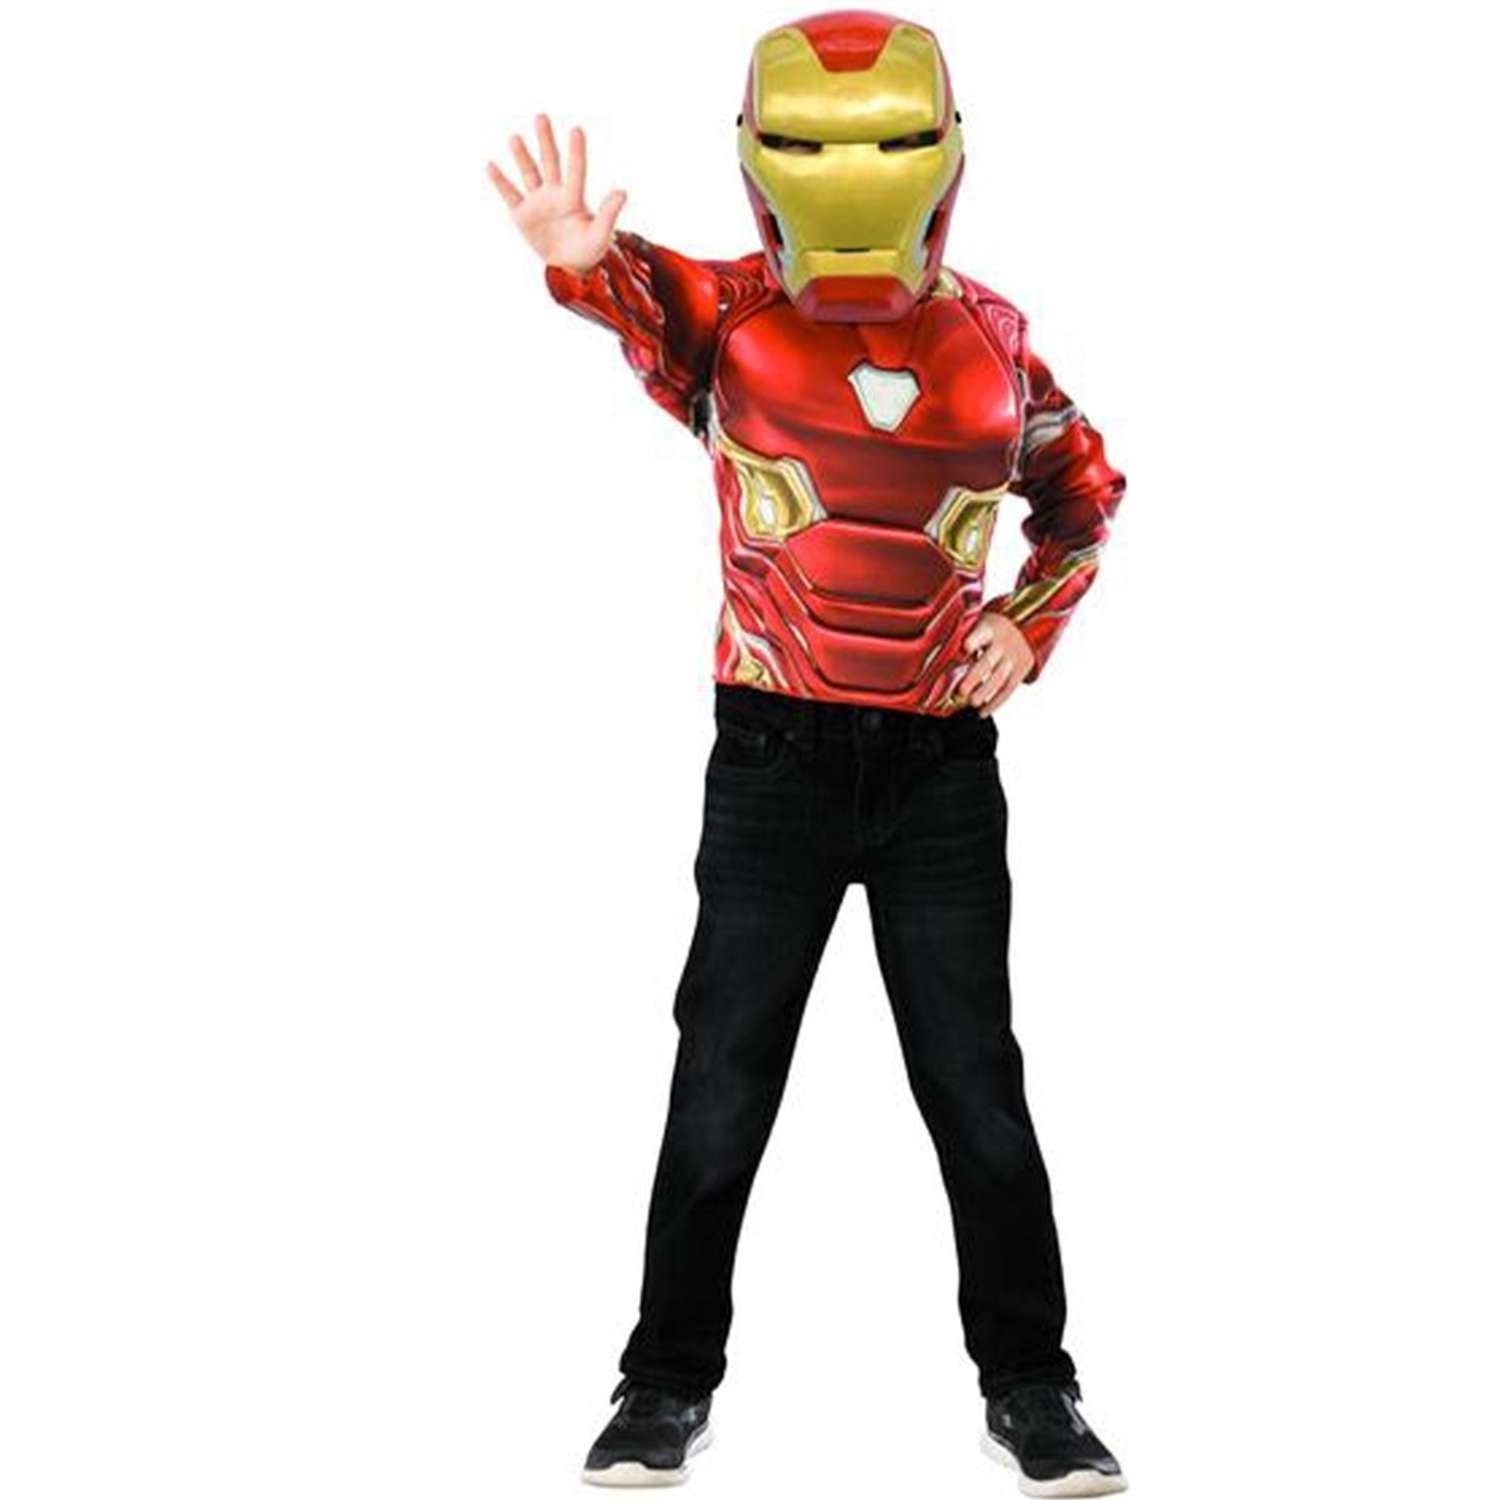 Красный костюм и маска. Детский костюм железного человека. Костюм маска. Rubies костюмы железного человека. Карнавальный костюм Rubie's Железный человек Deluxe.